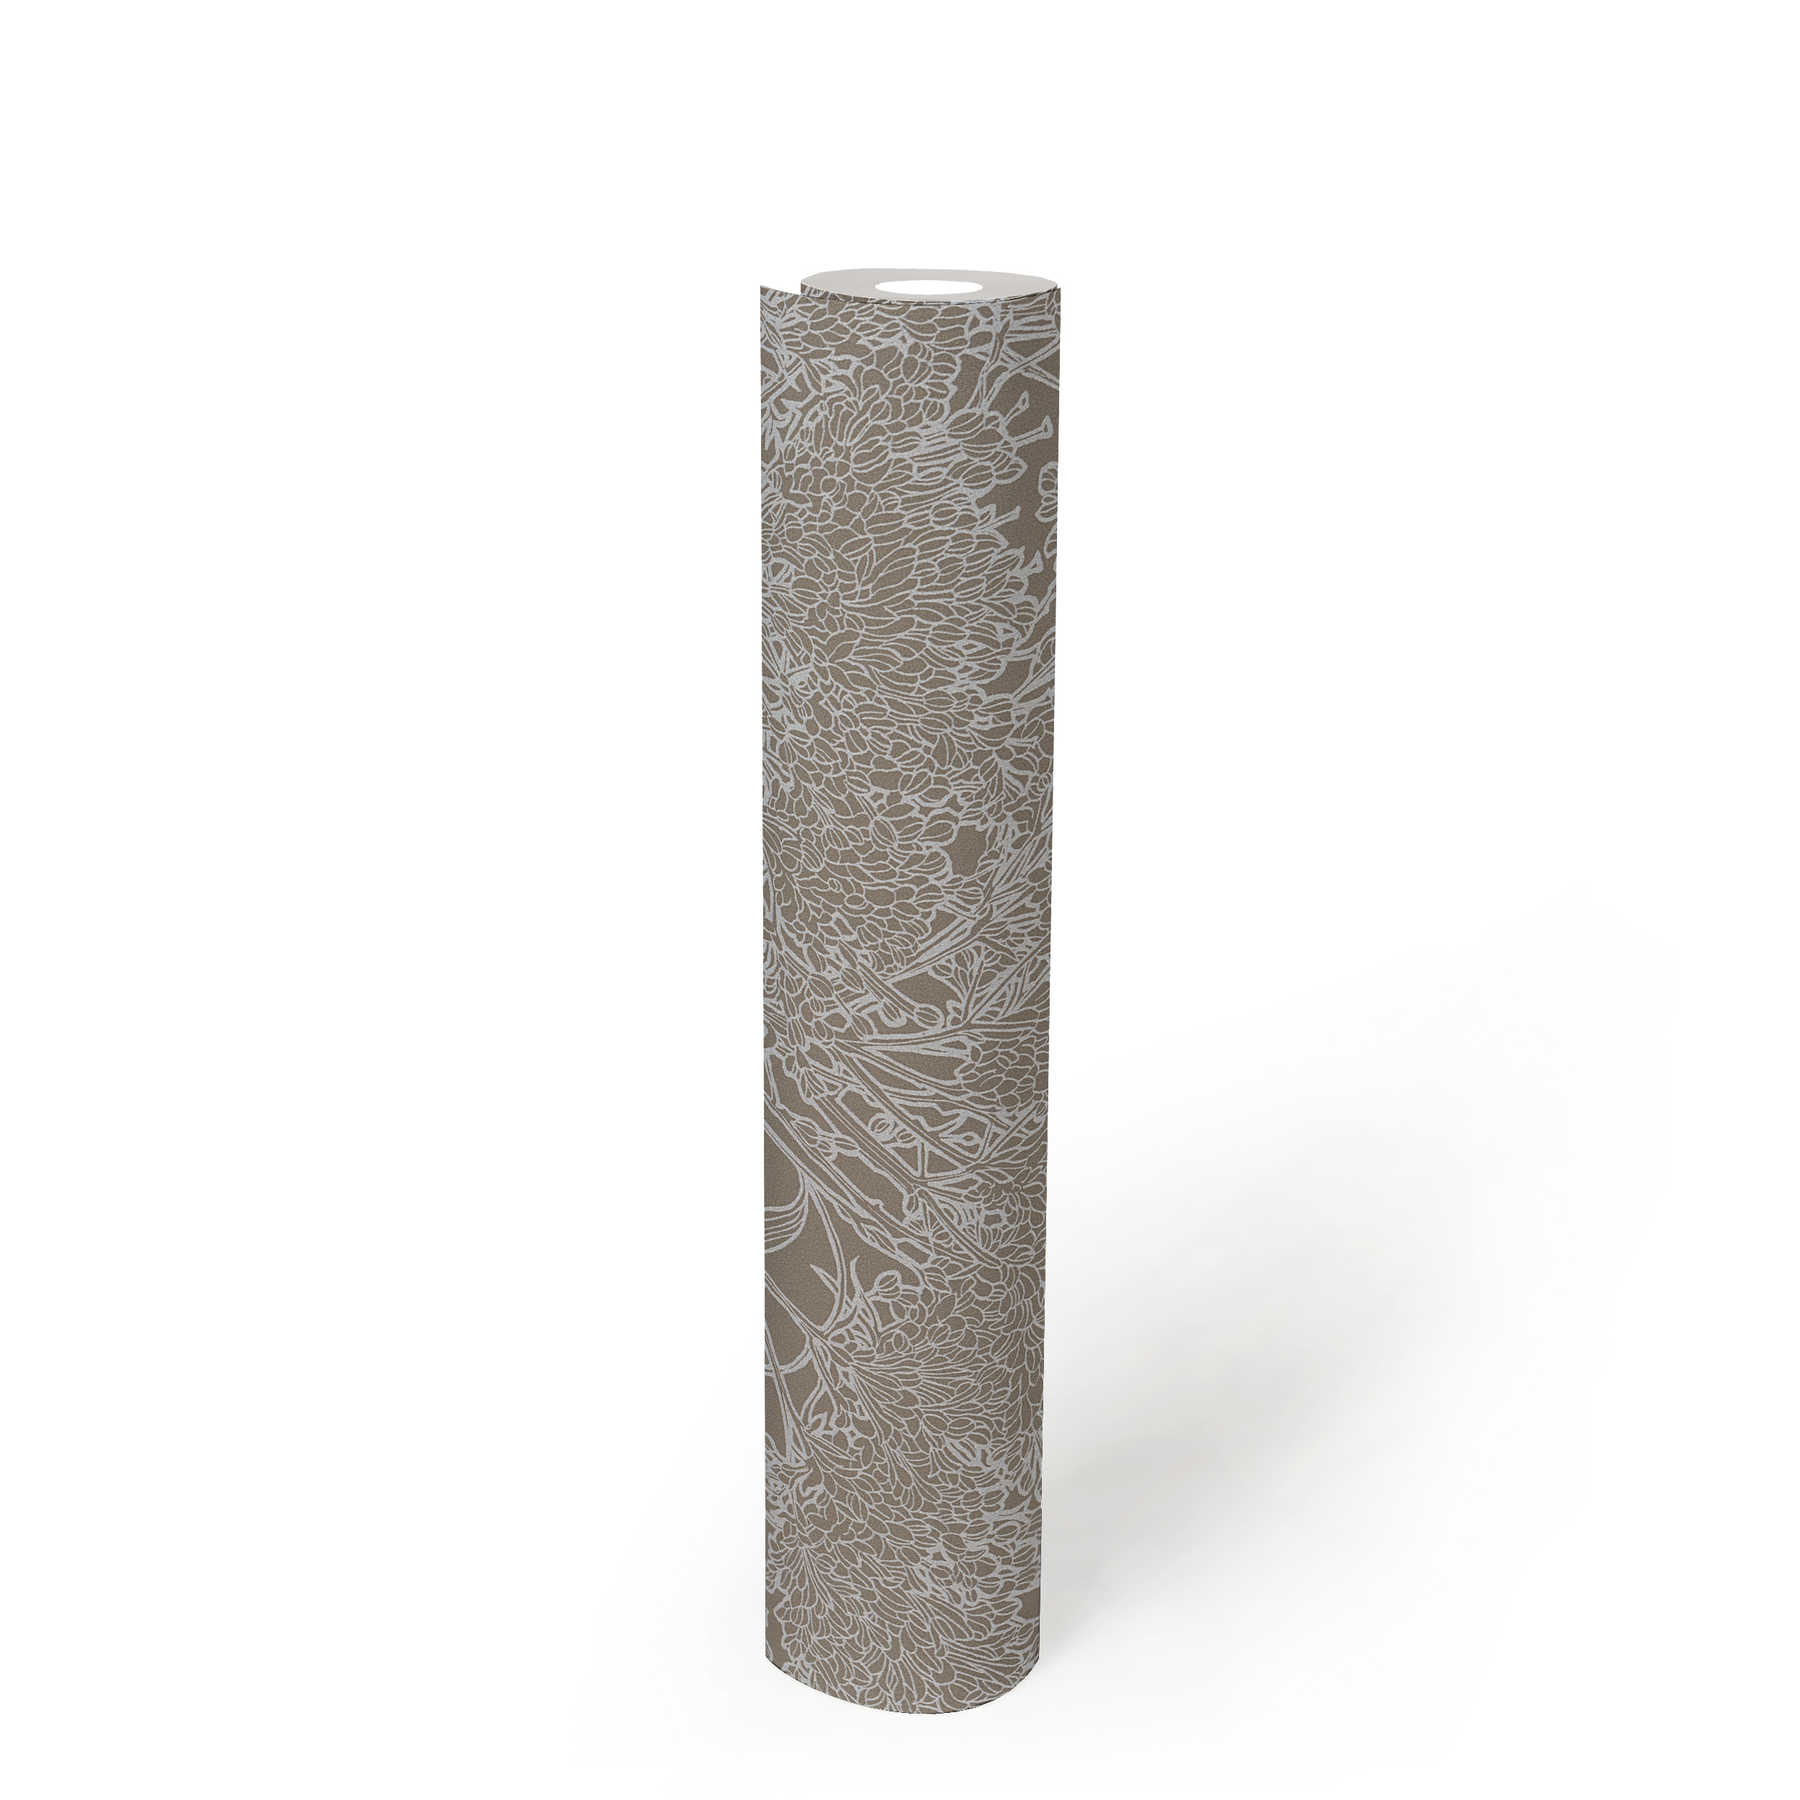             Bloemenbehang in grijs met zilver metallic effect - grijs, zilver
        